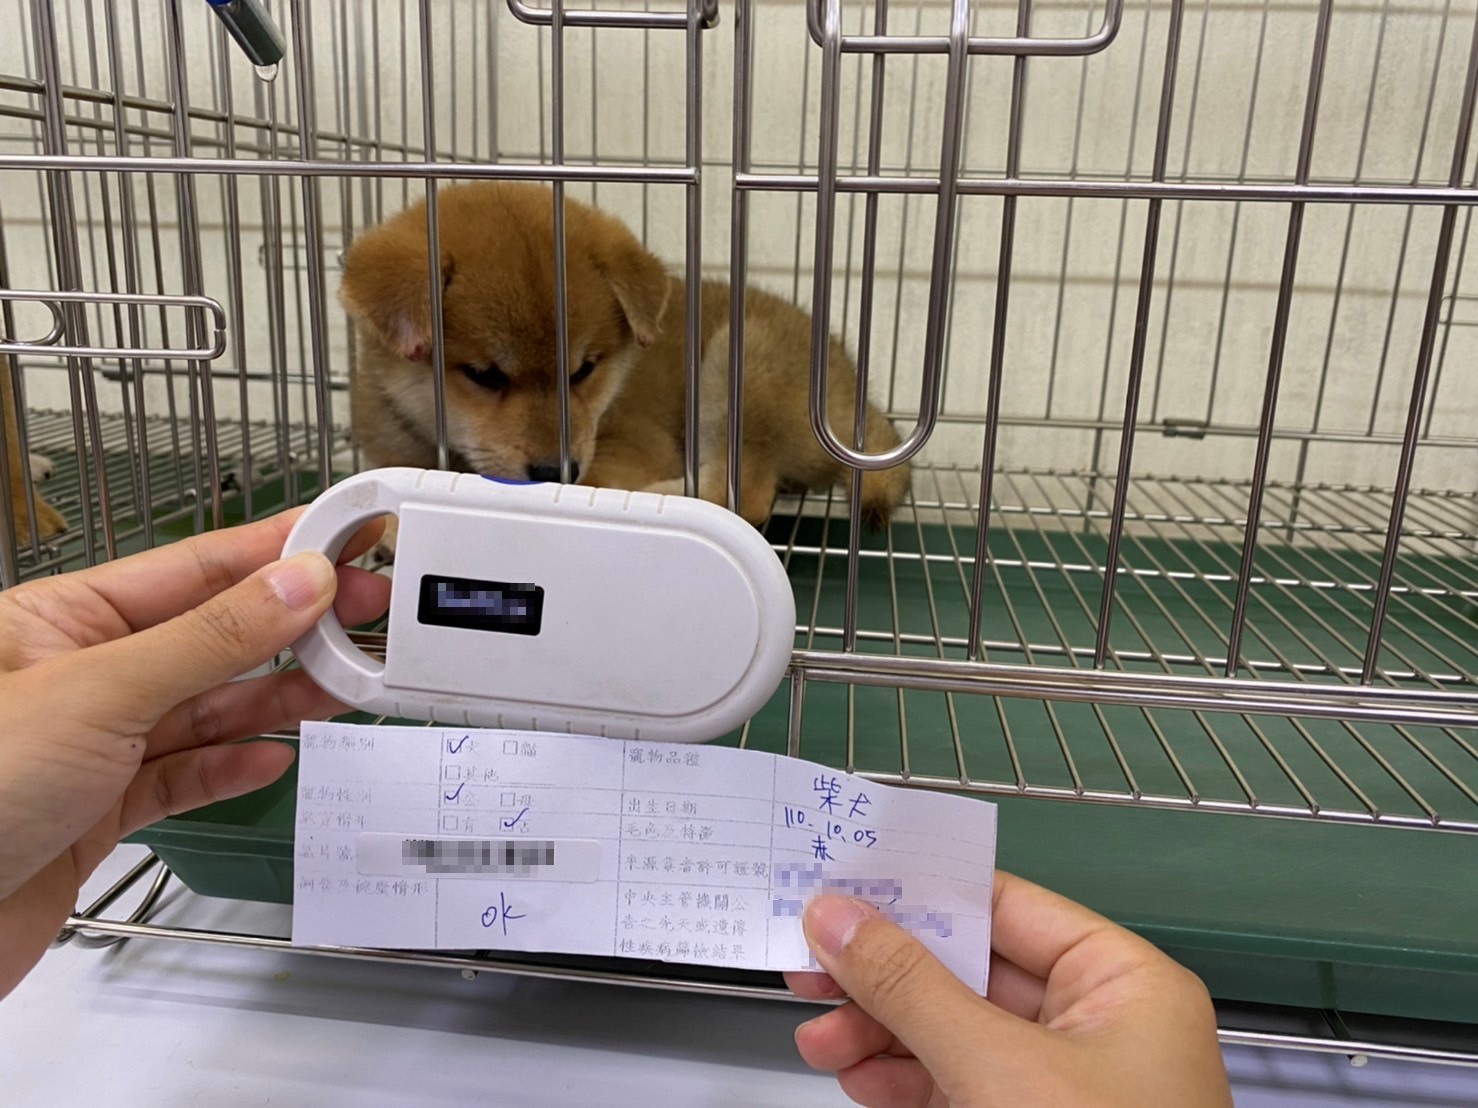 掃描犬隻晶片號碼核對資訊卡及寵物登記資料